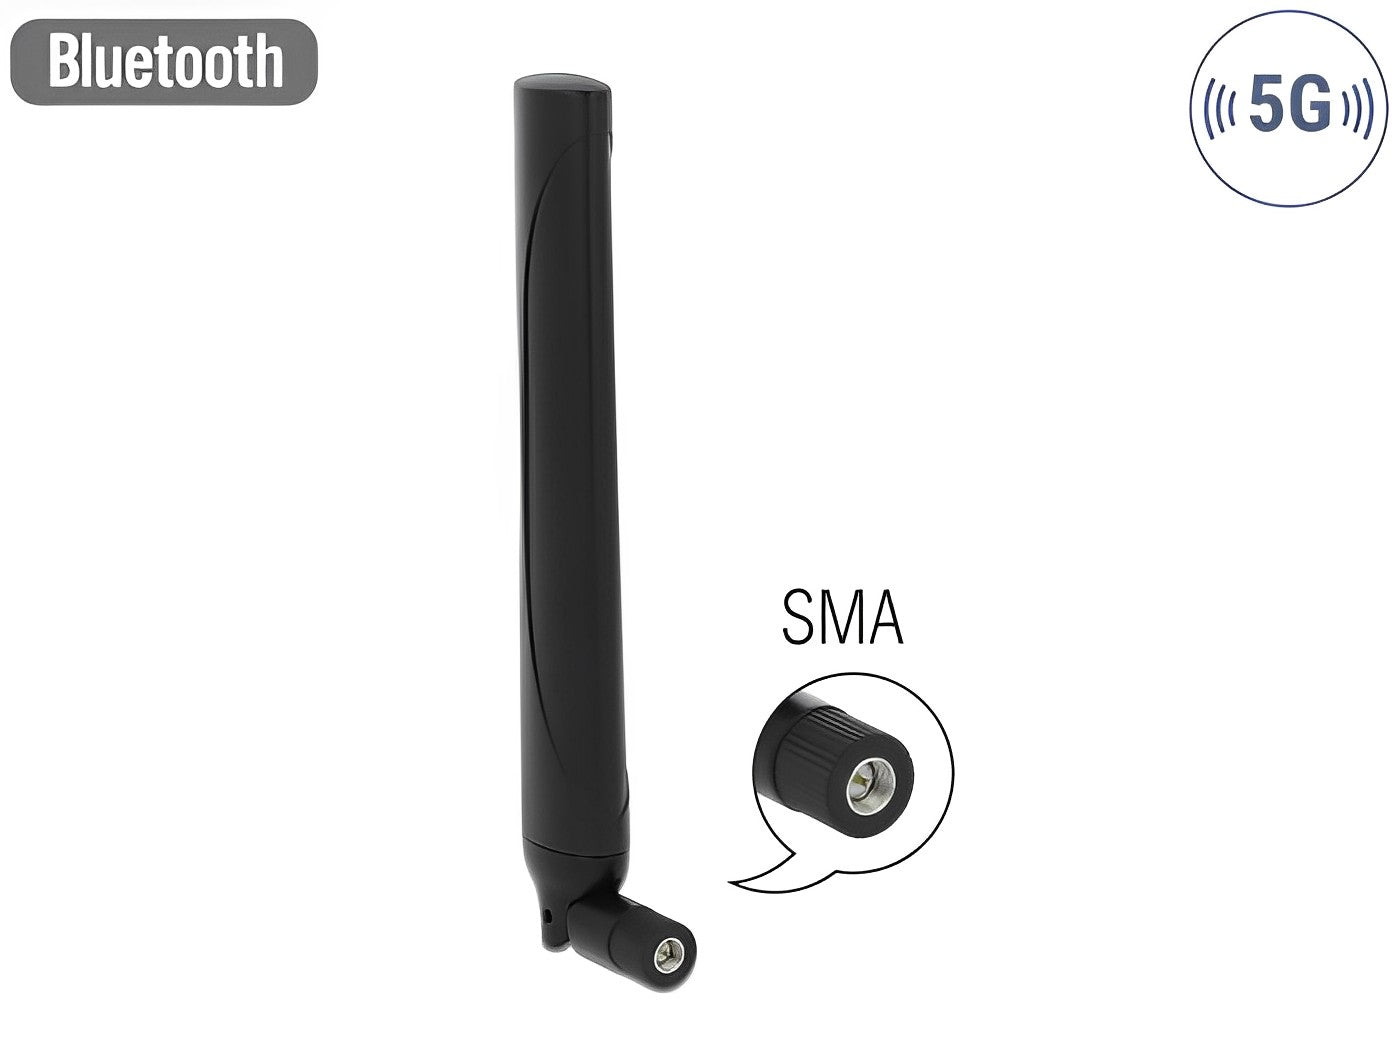  אנטנה כלל כיוונית 5G LTE -0.5 - 2.3 dBi פנימית מחבר SMA plug - delock.israel